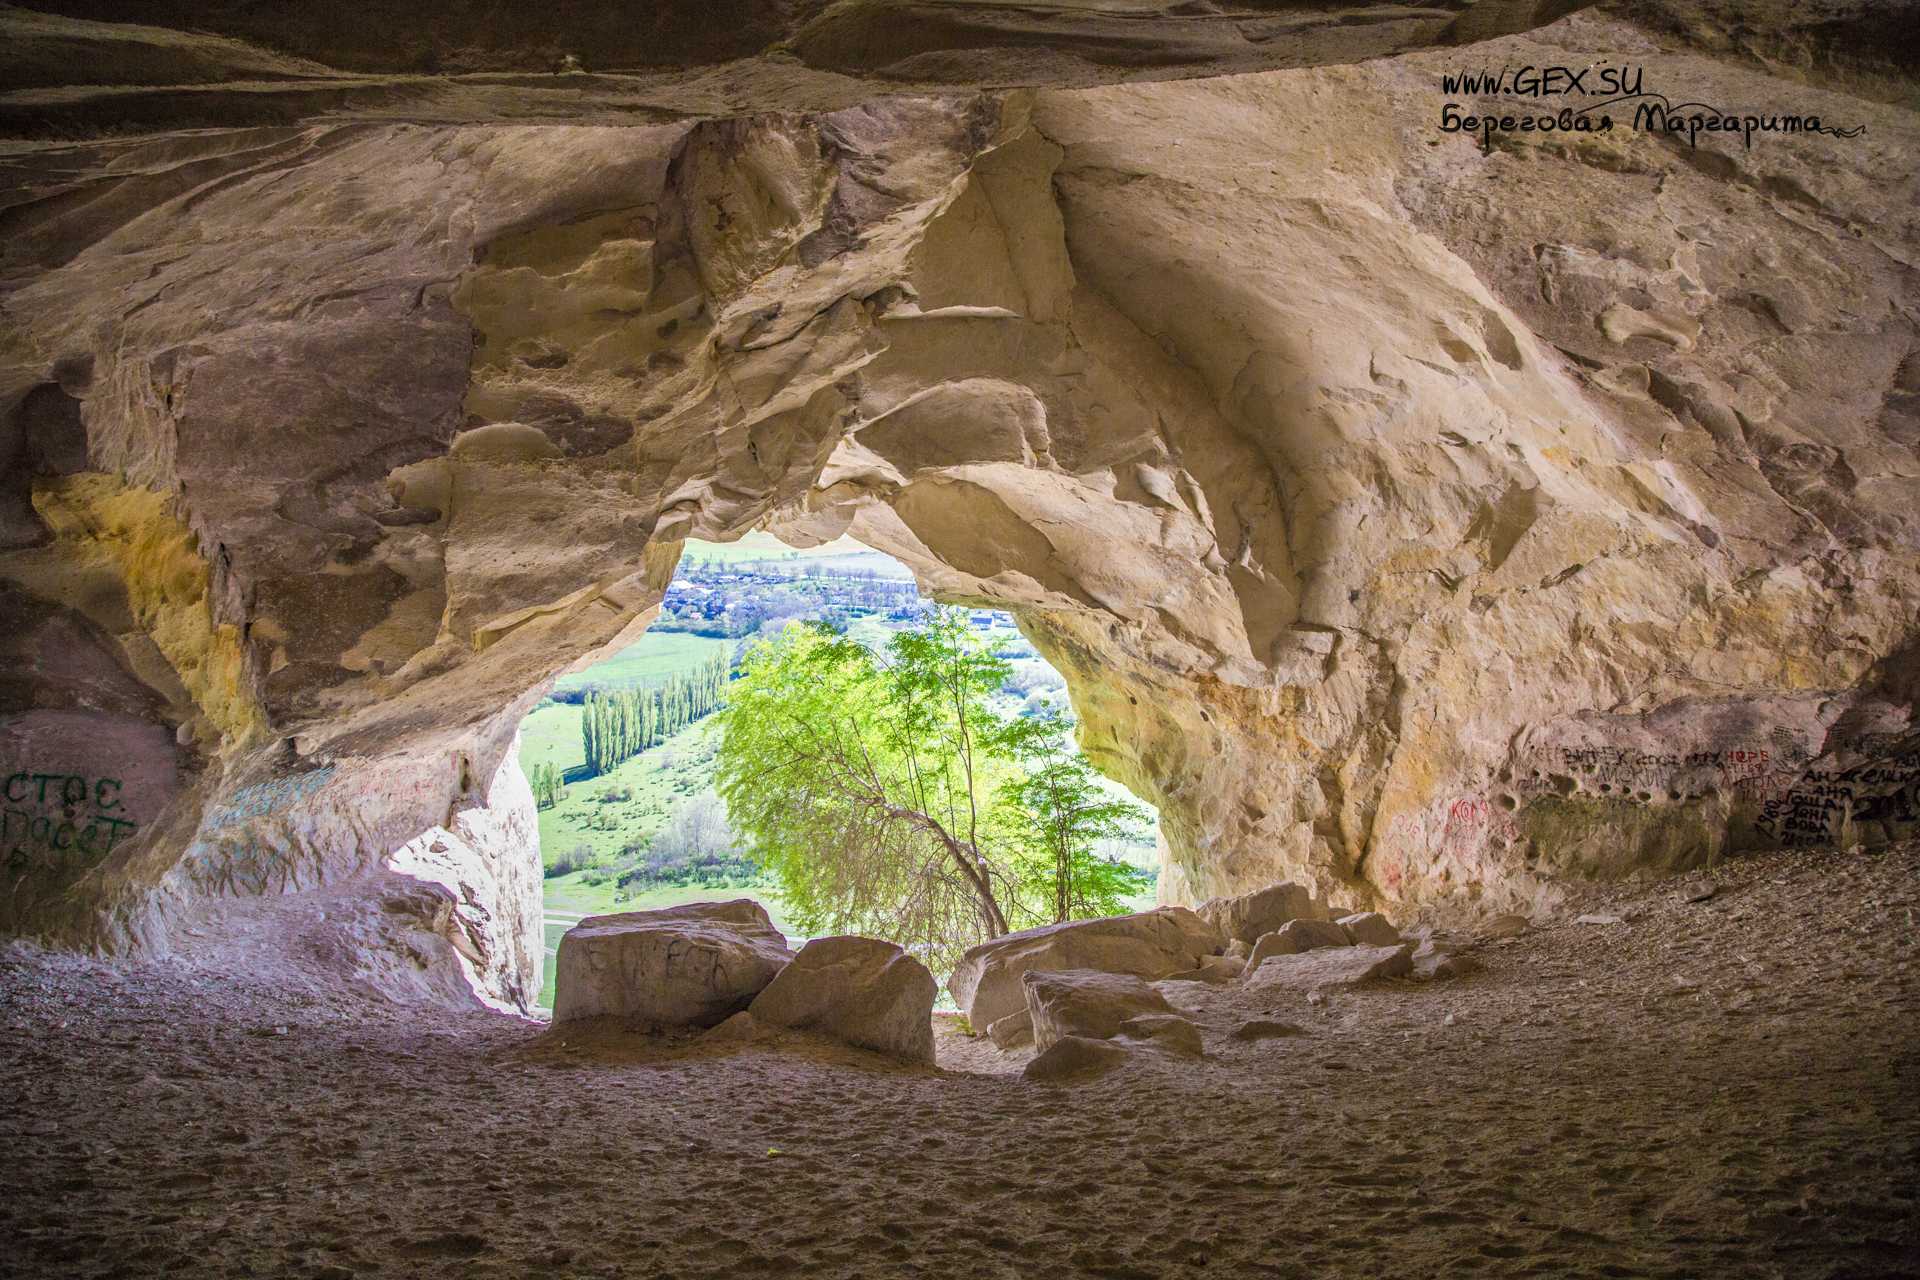 Big mother nature cave. Грот пещера Алтын тешик. Азыхская пещера Нагорный Карабах. Белая скала пещера Алтын тешик.